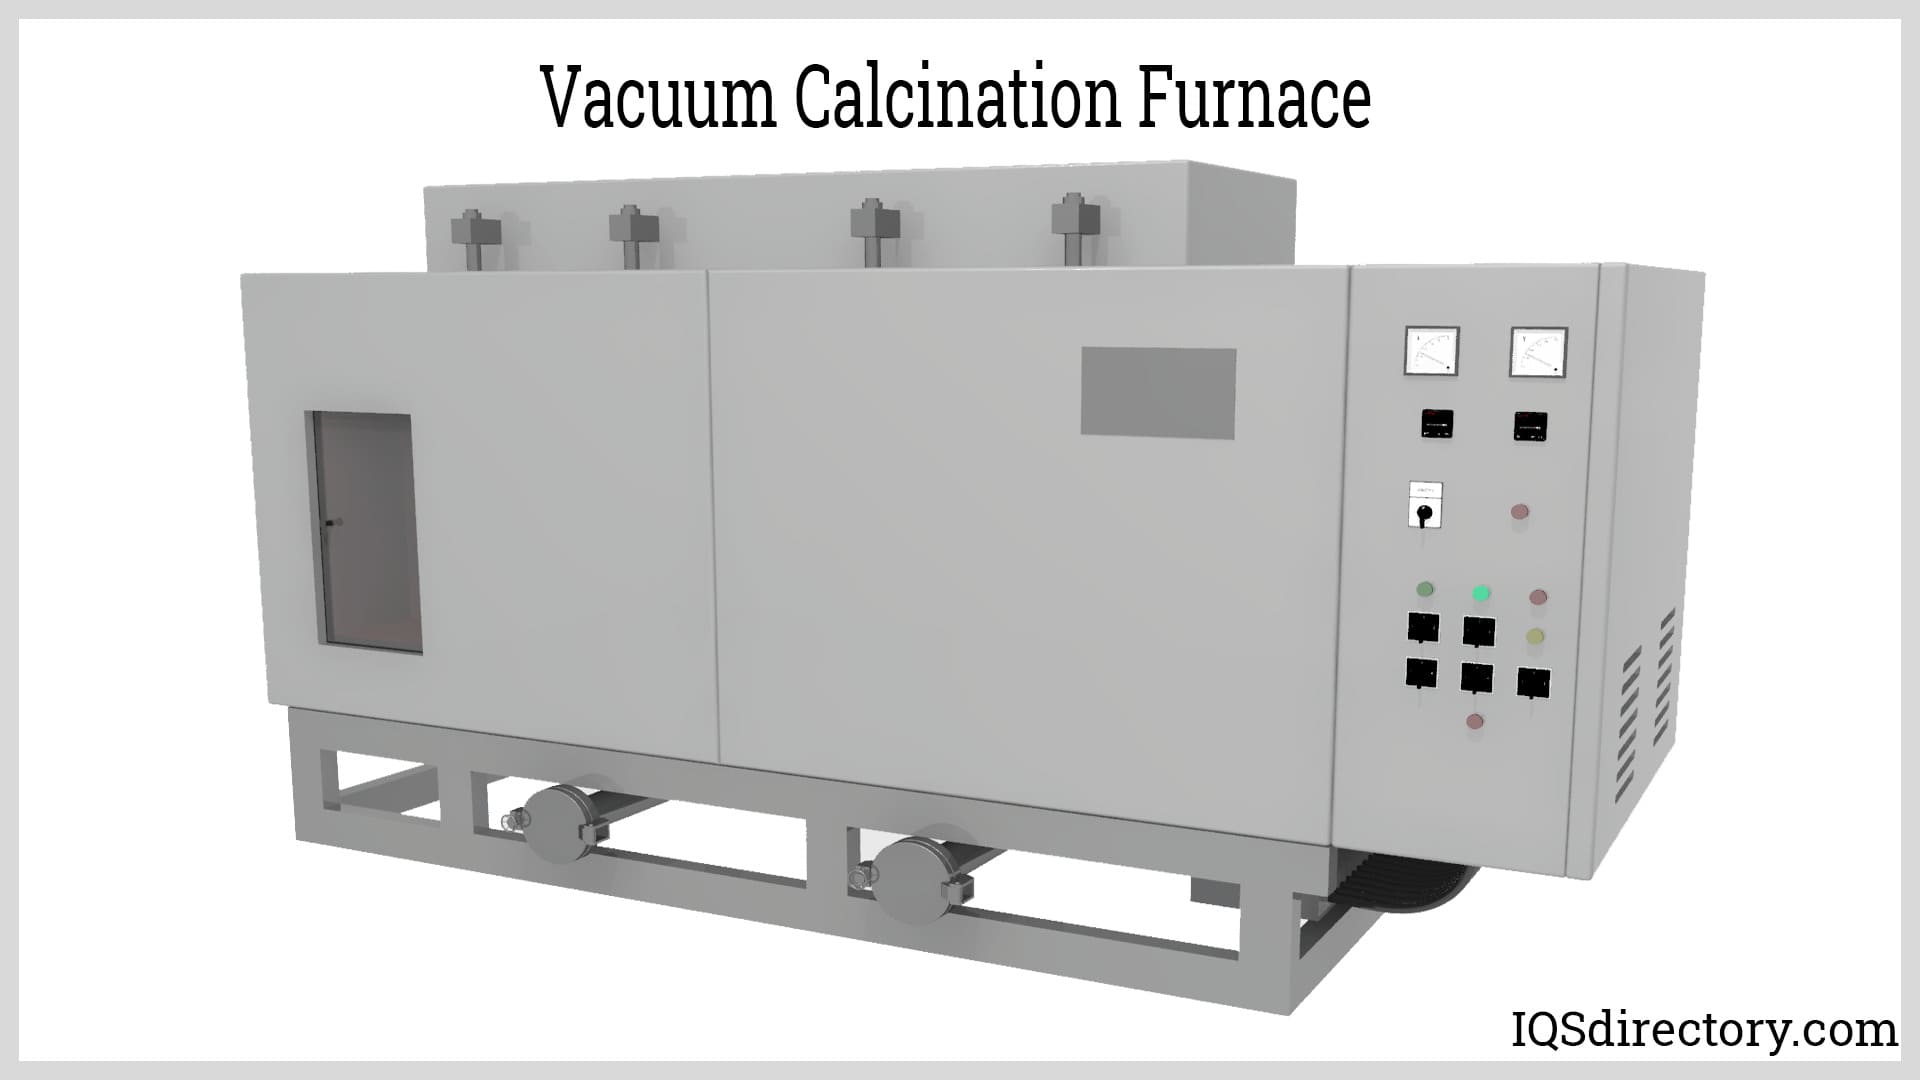 Vacuum Calcination Furnace